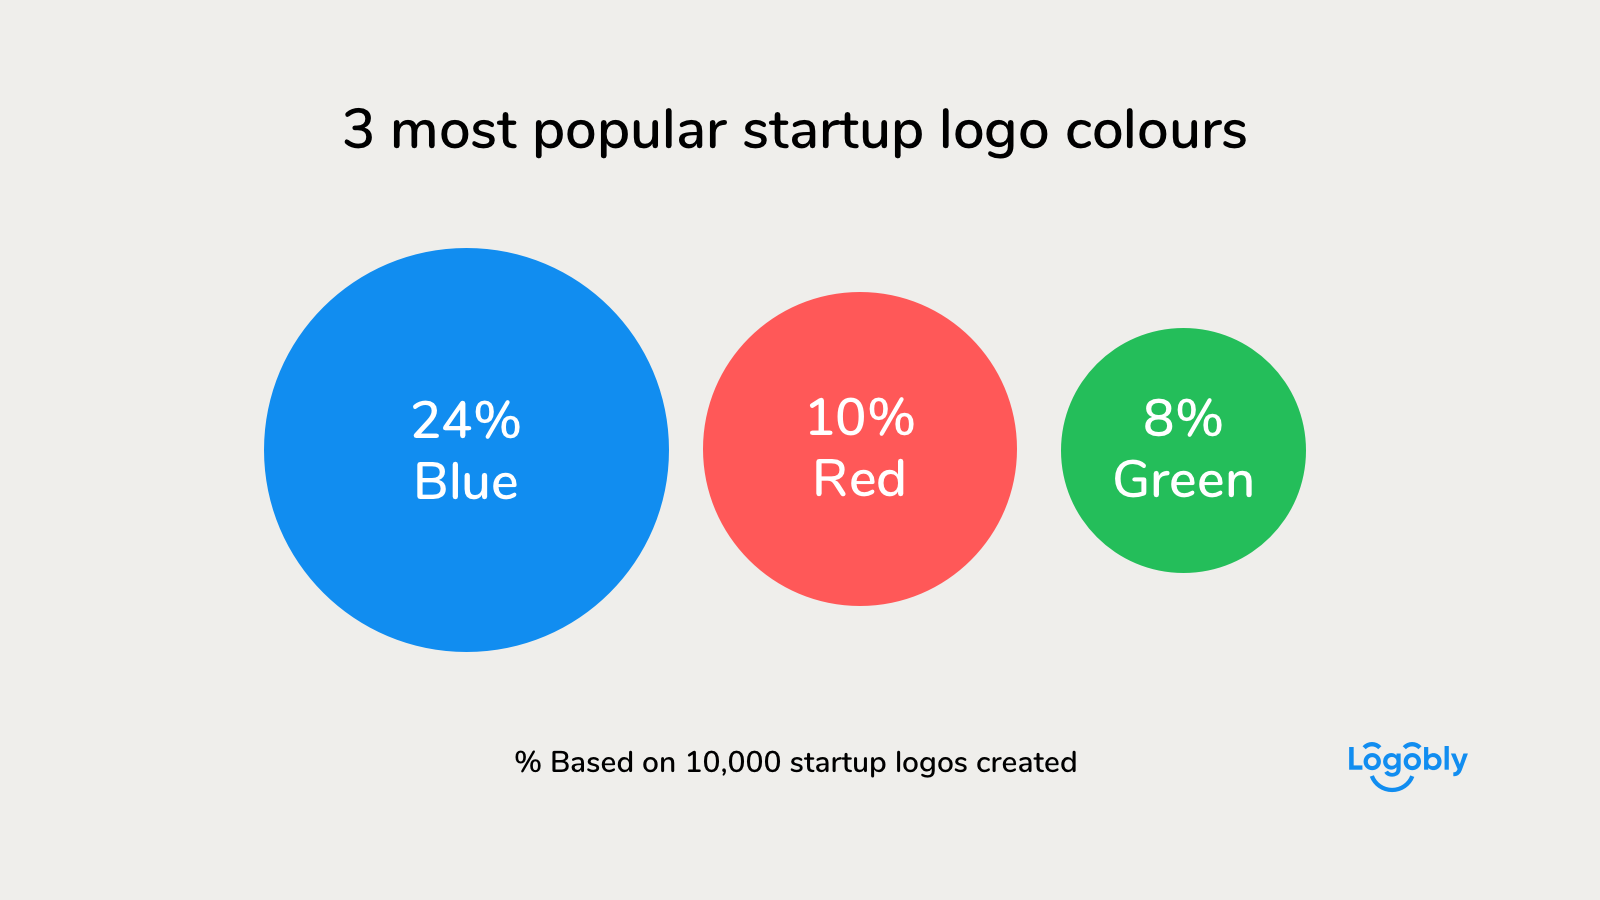 Брендирование для стартапов: какой цвет выбирают для своего бренда, инфографика